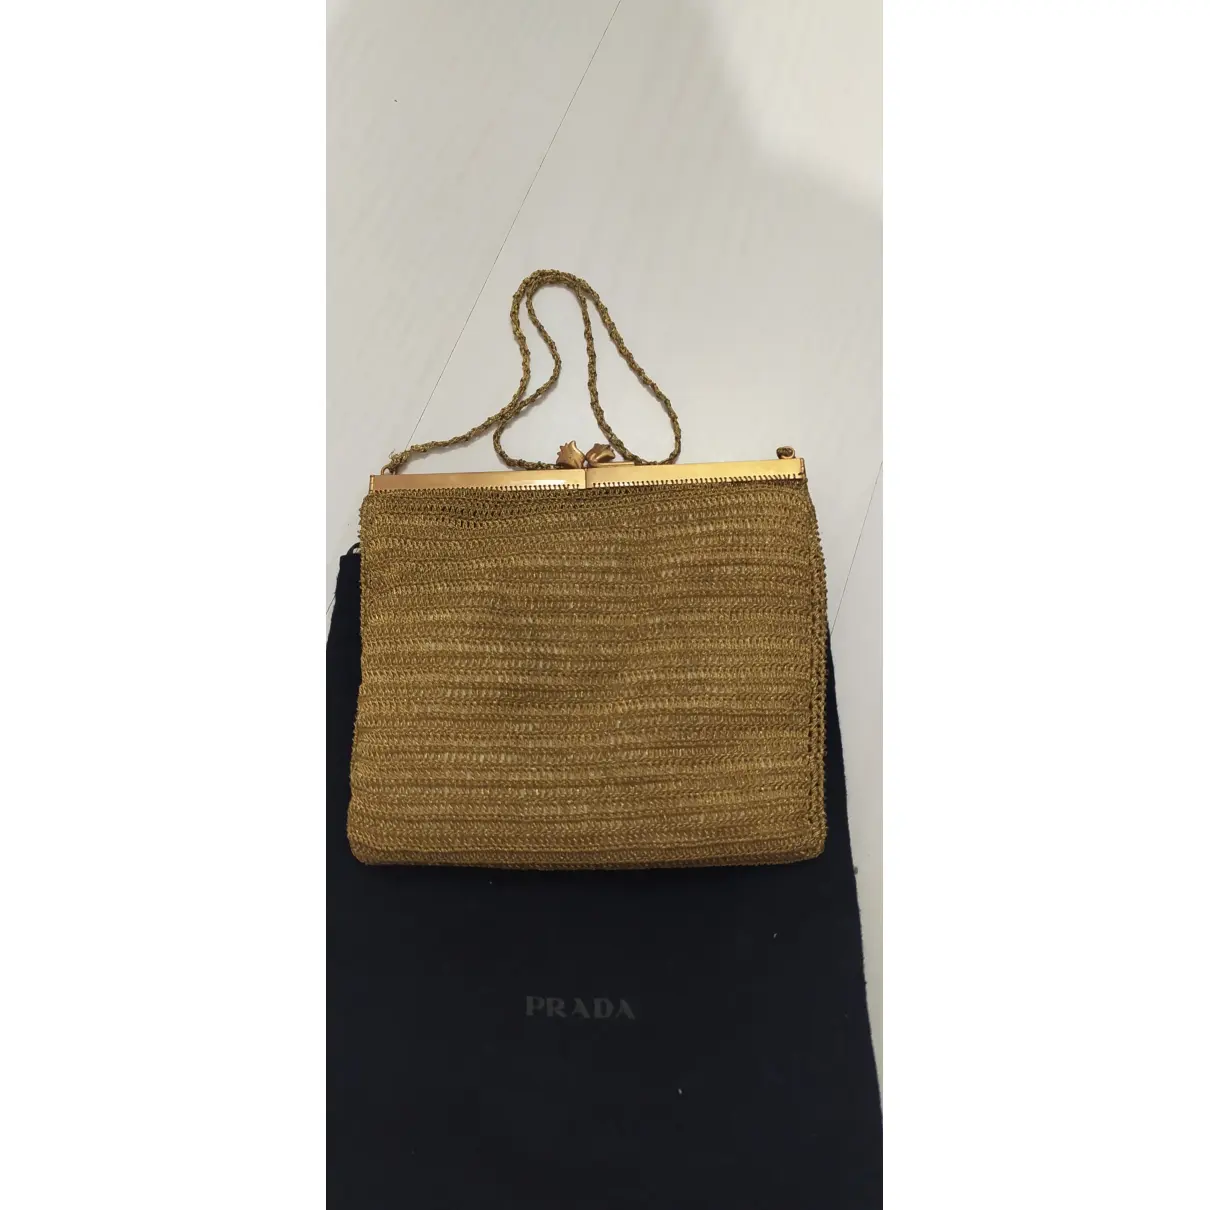 Buy Prada Margit handbag online